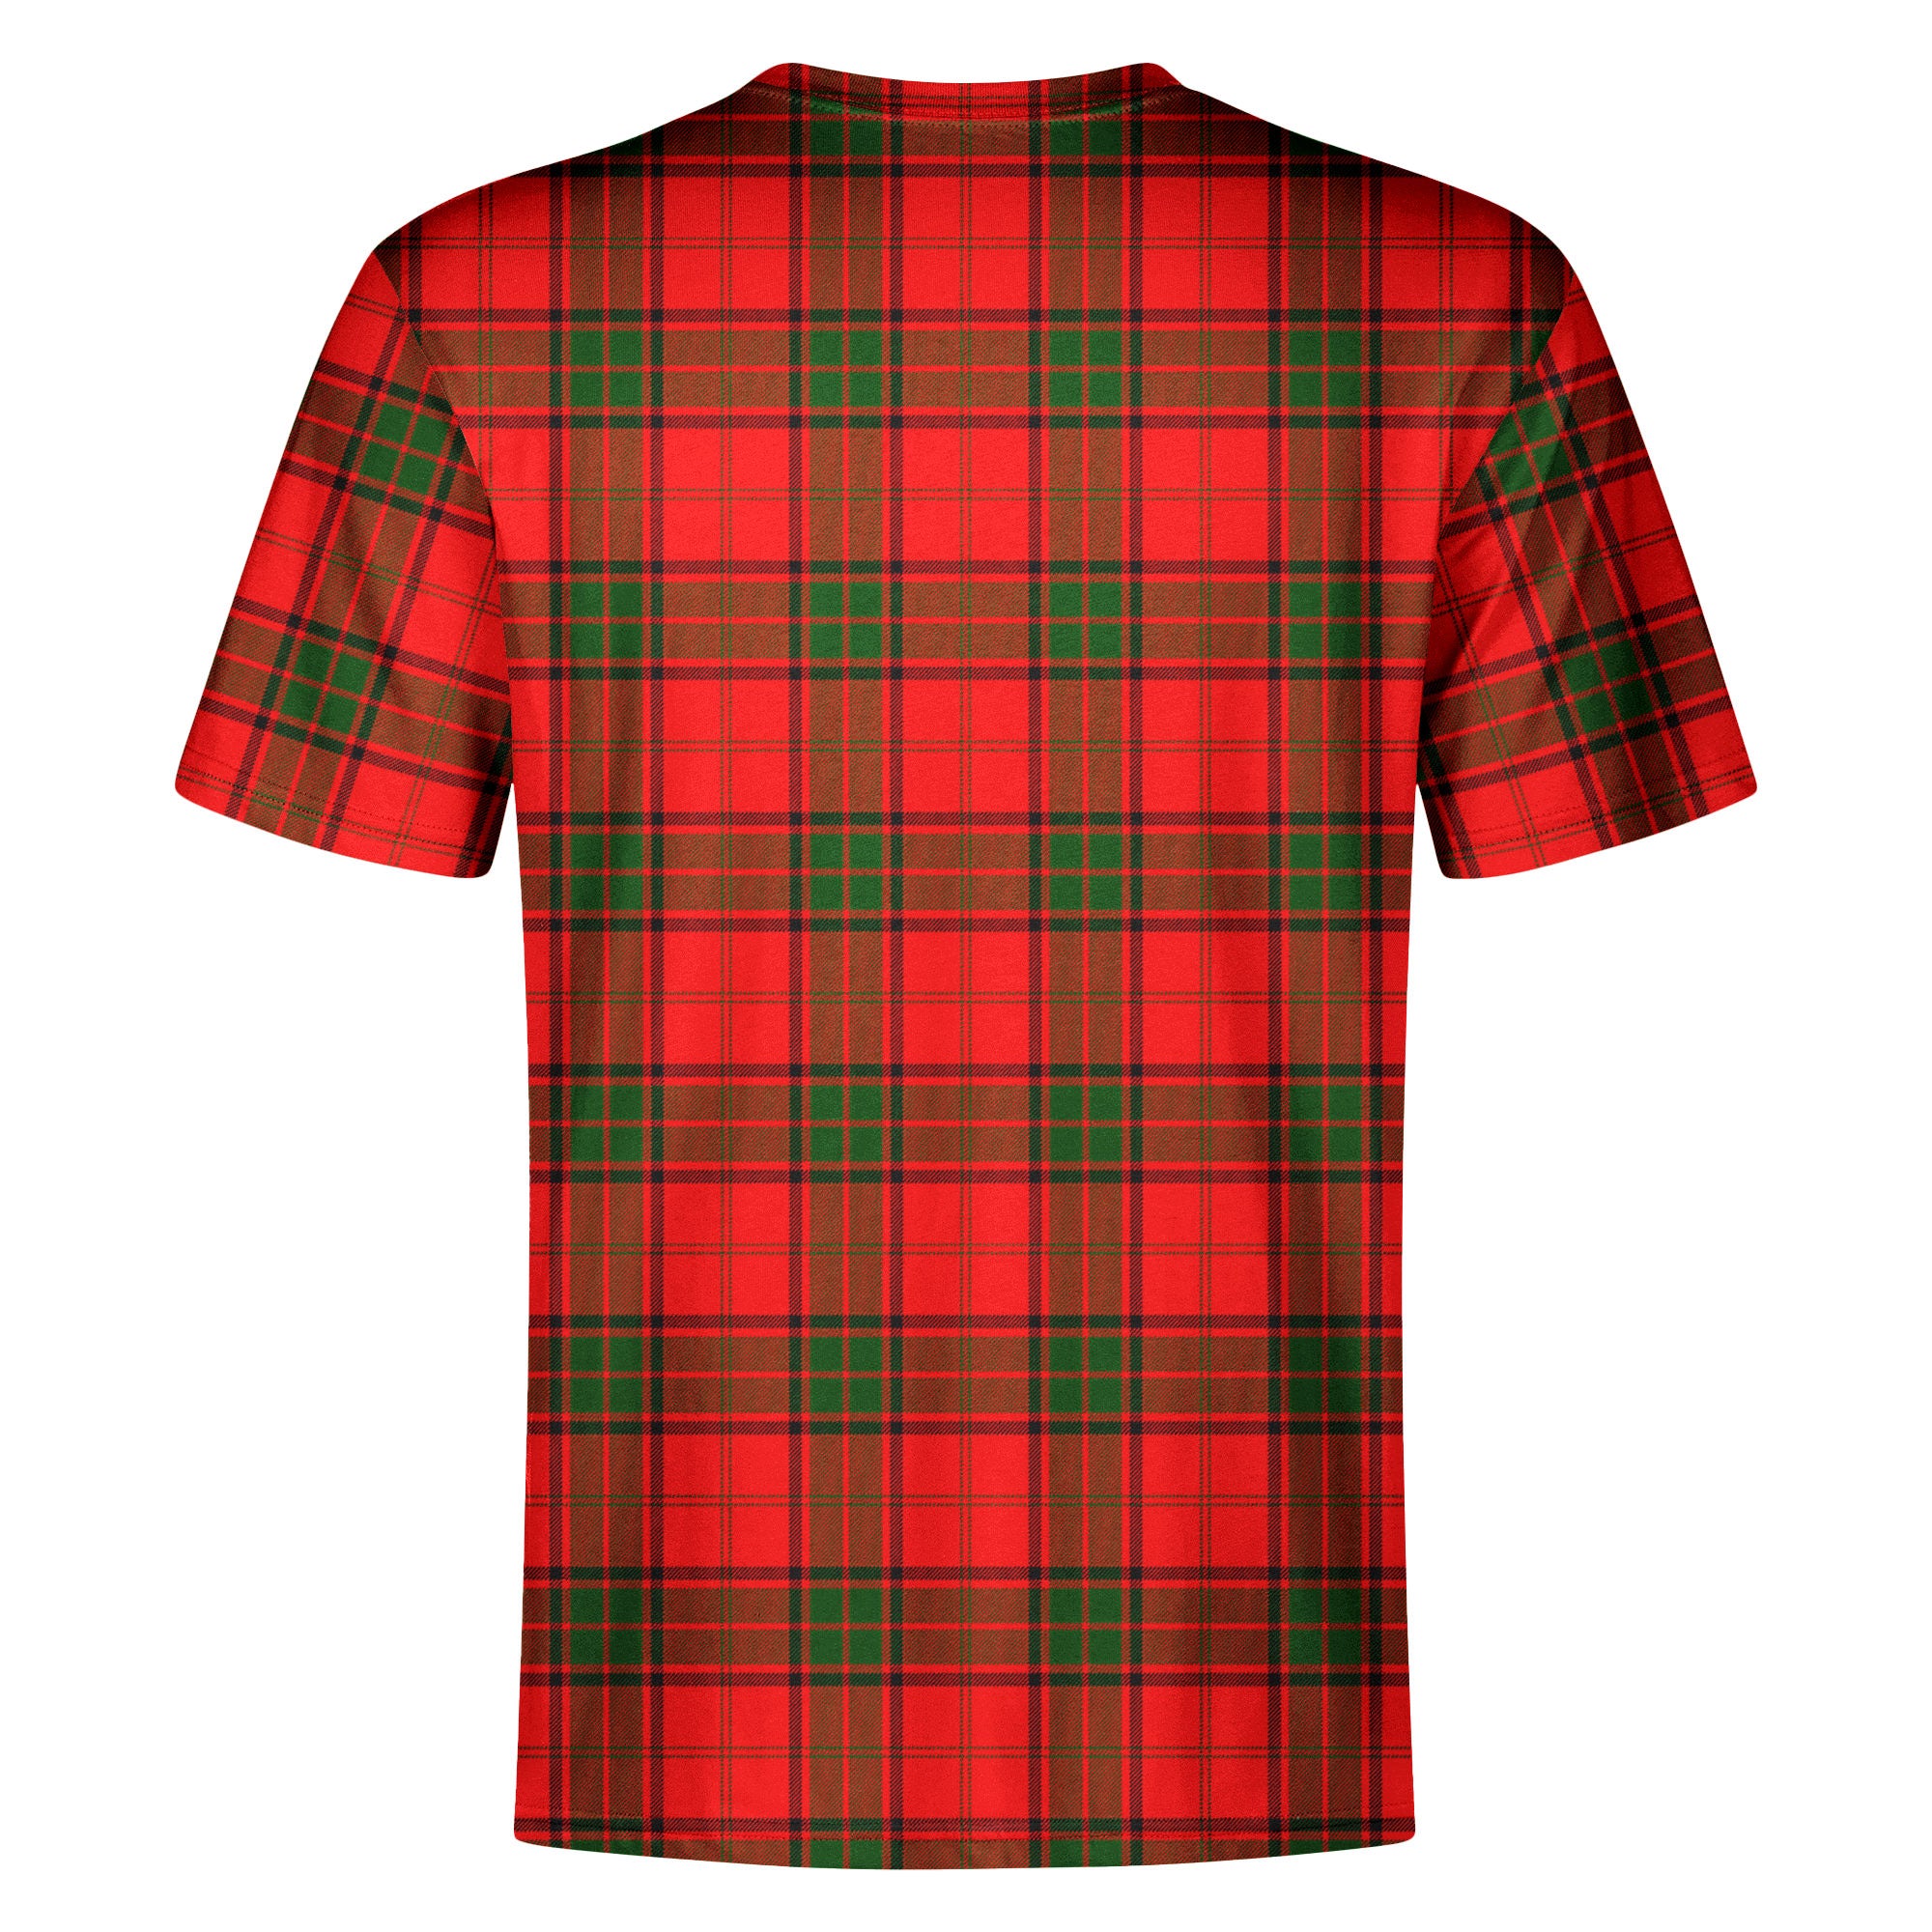 Maxtone Tartan Crest T-shirt